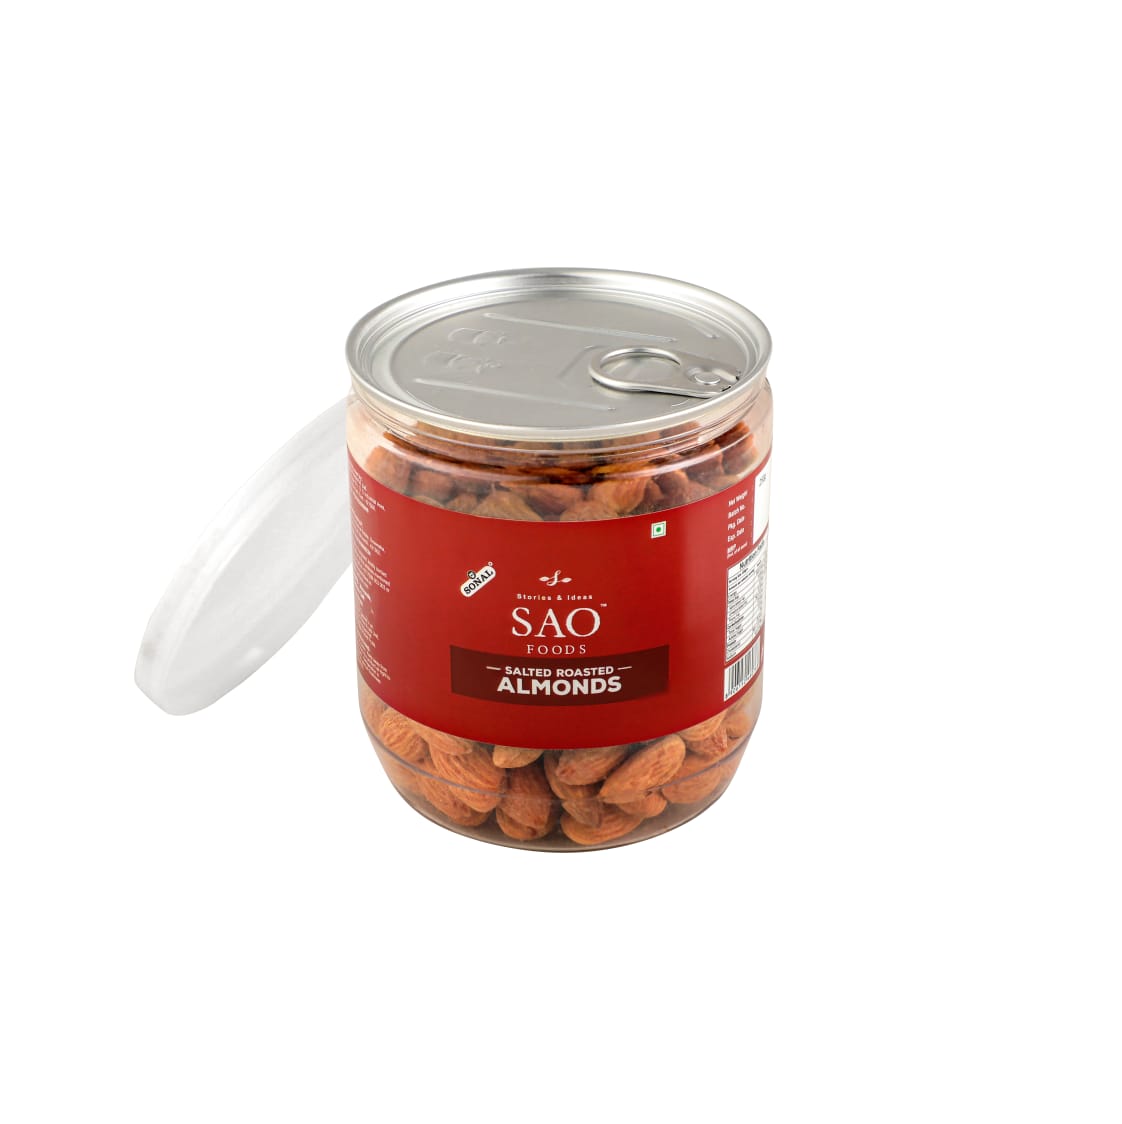 SAO FOODS Roasted & Salted Almonds 250 gm | PET Jar with Aluminum cap